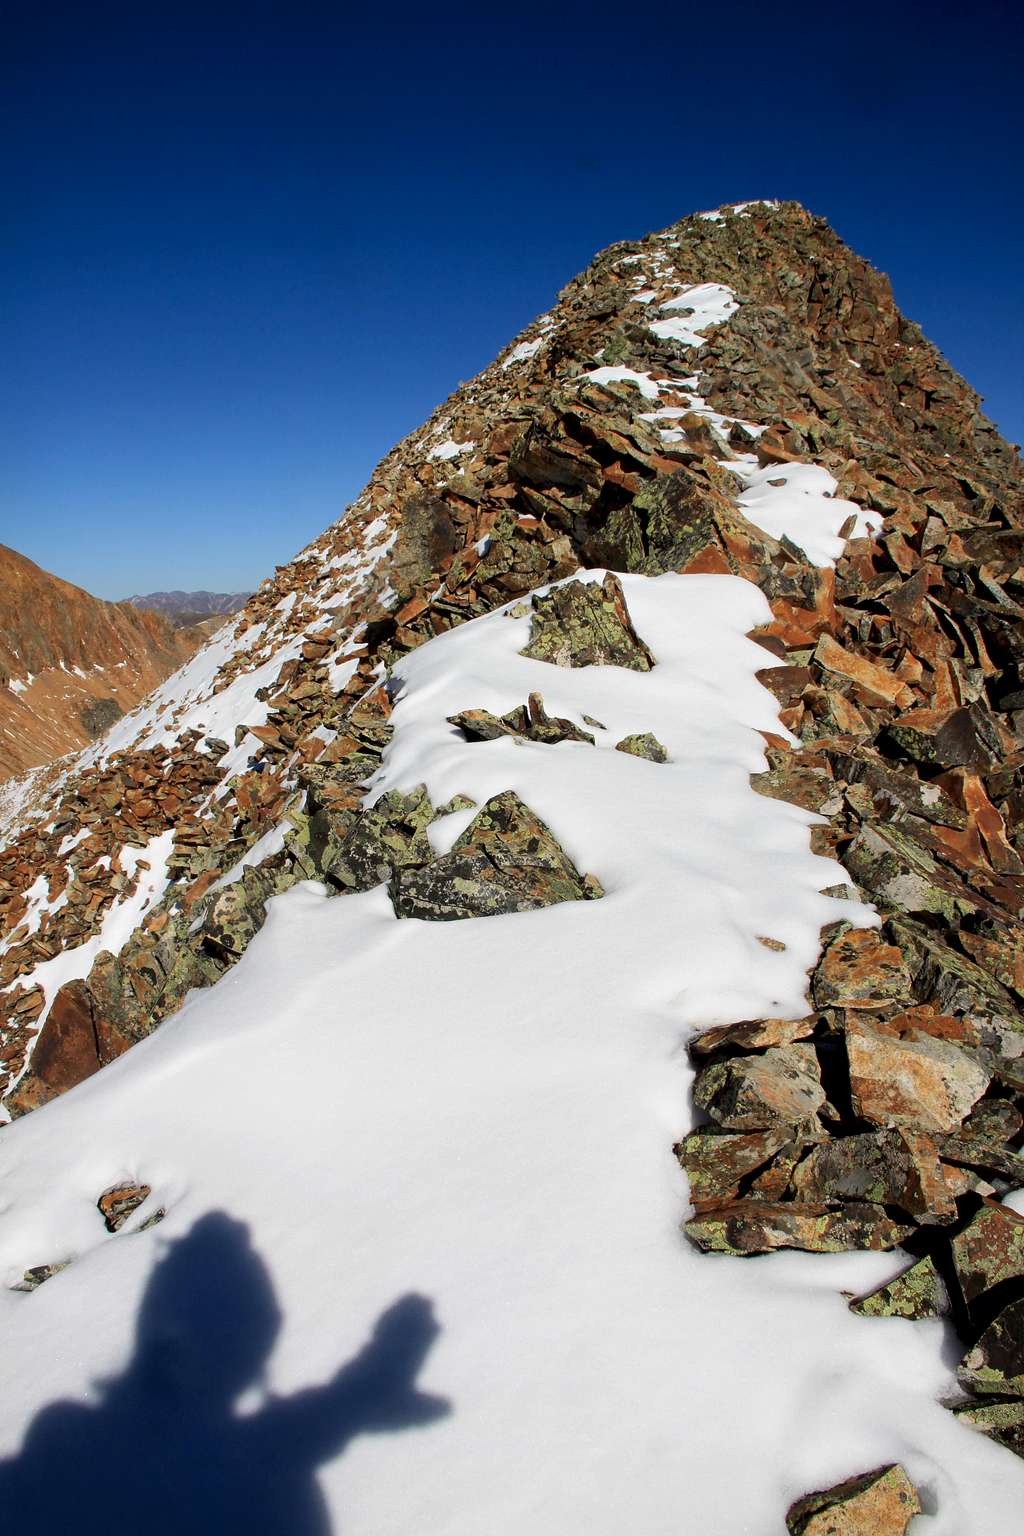 Summit of Beattie Peak